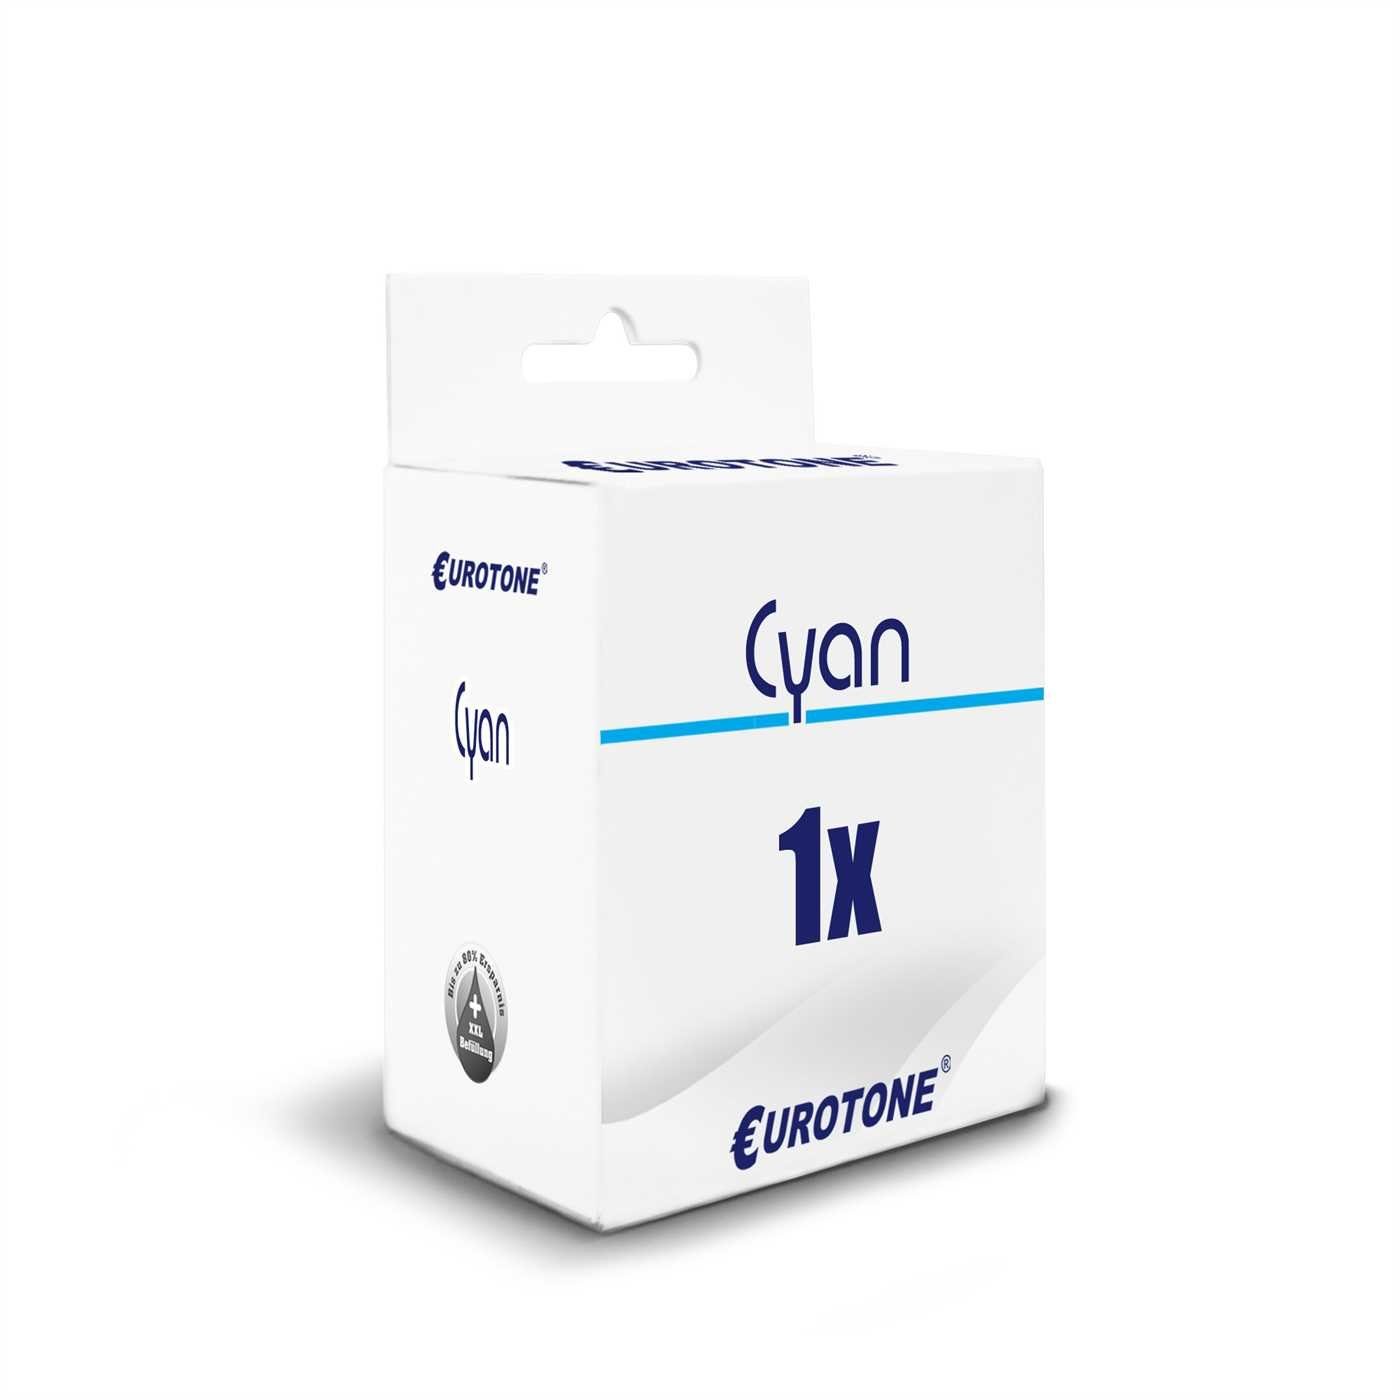 Tintenpatrone Epson Eurotone Cyan ersetzt Patrone T1632 16XL